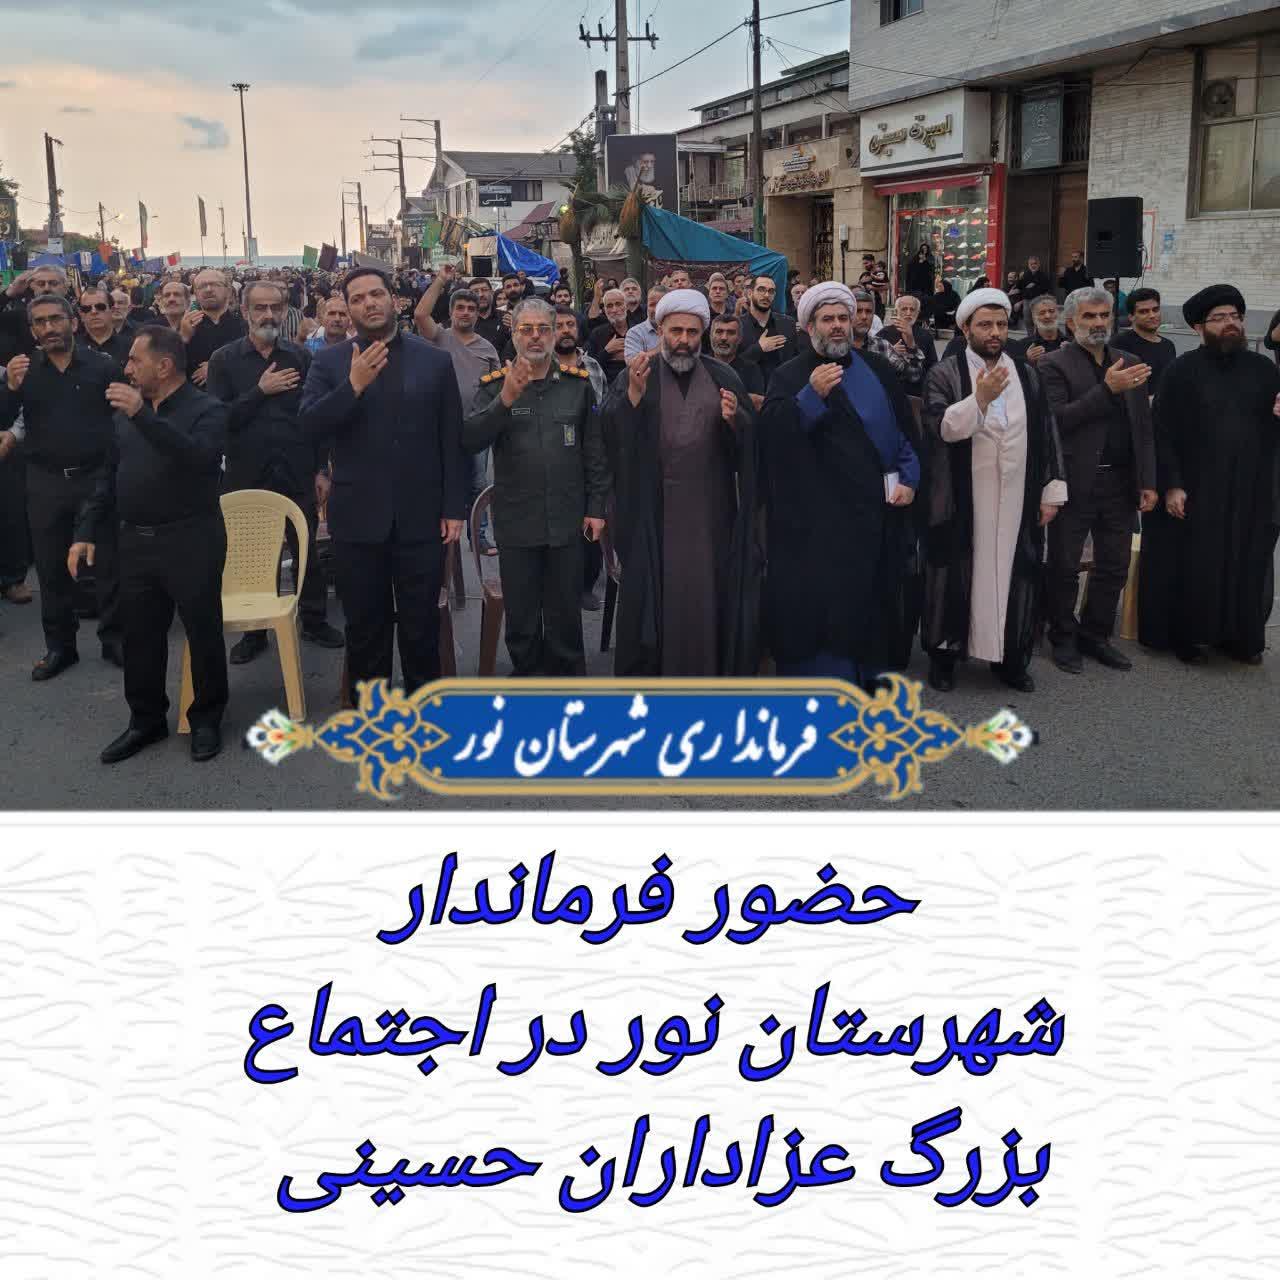 حضور فرماندار شهرستان نور در اجتماع بزرگ عزاداران حسینی 